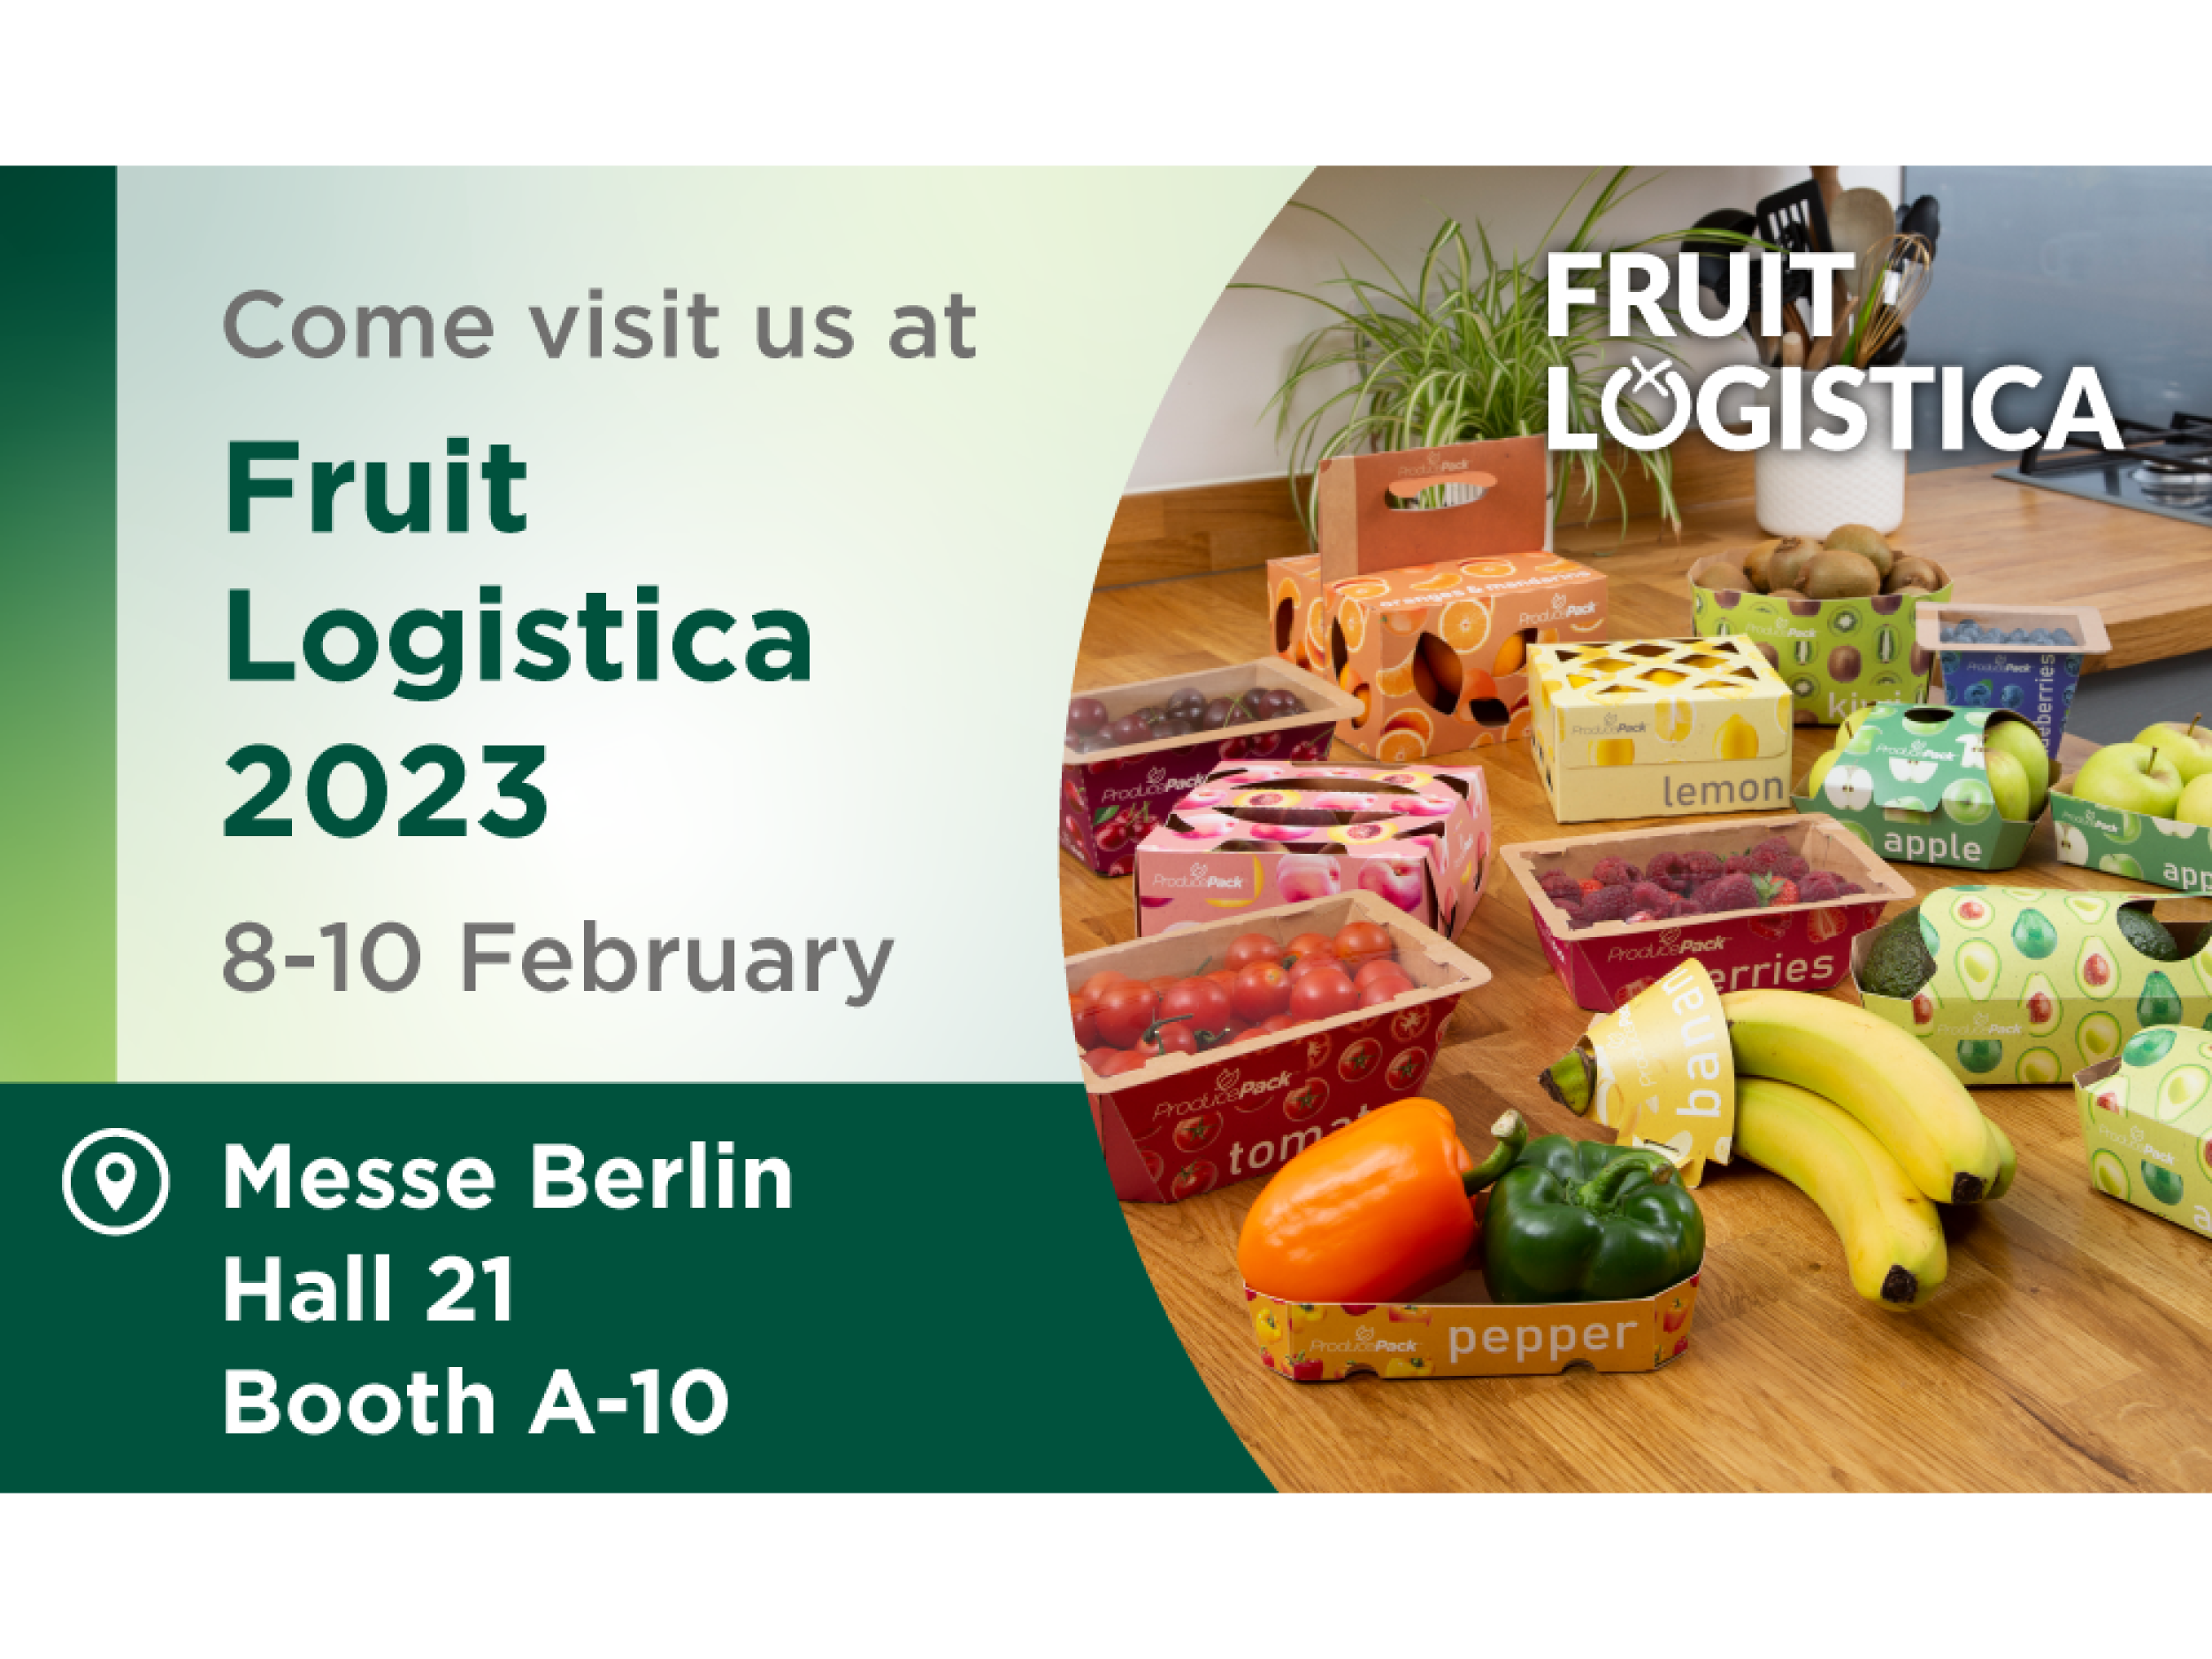 Besuchen Sie Graphic Packaging International auf der Fruit Logistica 2023 und sehen Sie sich unser gesamtes Sortiment an Verpackungen für frisches Obst und Gemüse an.